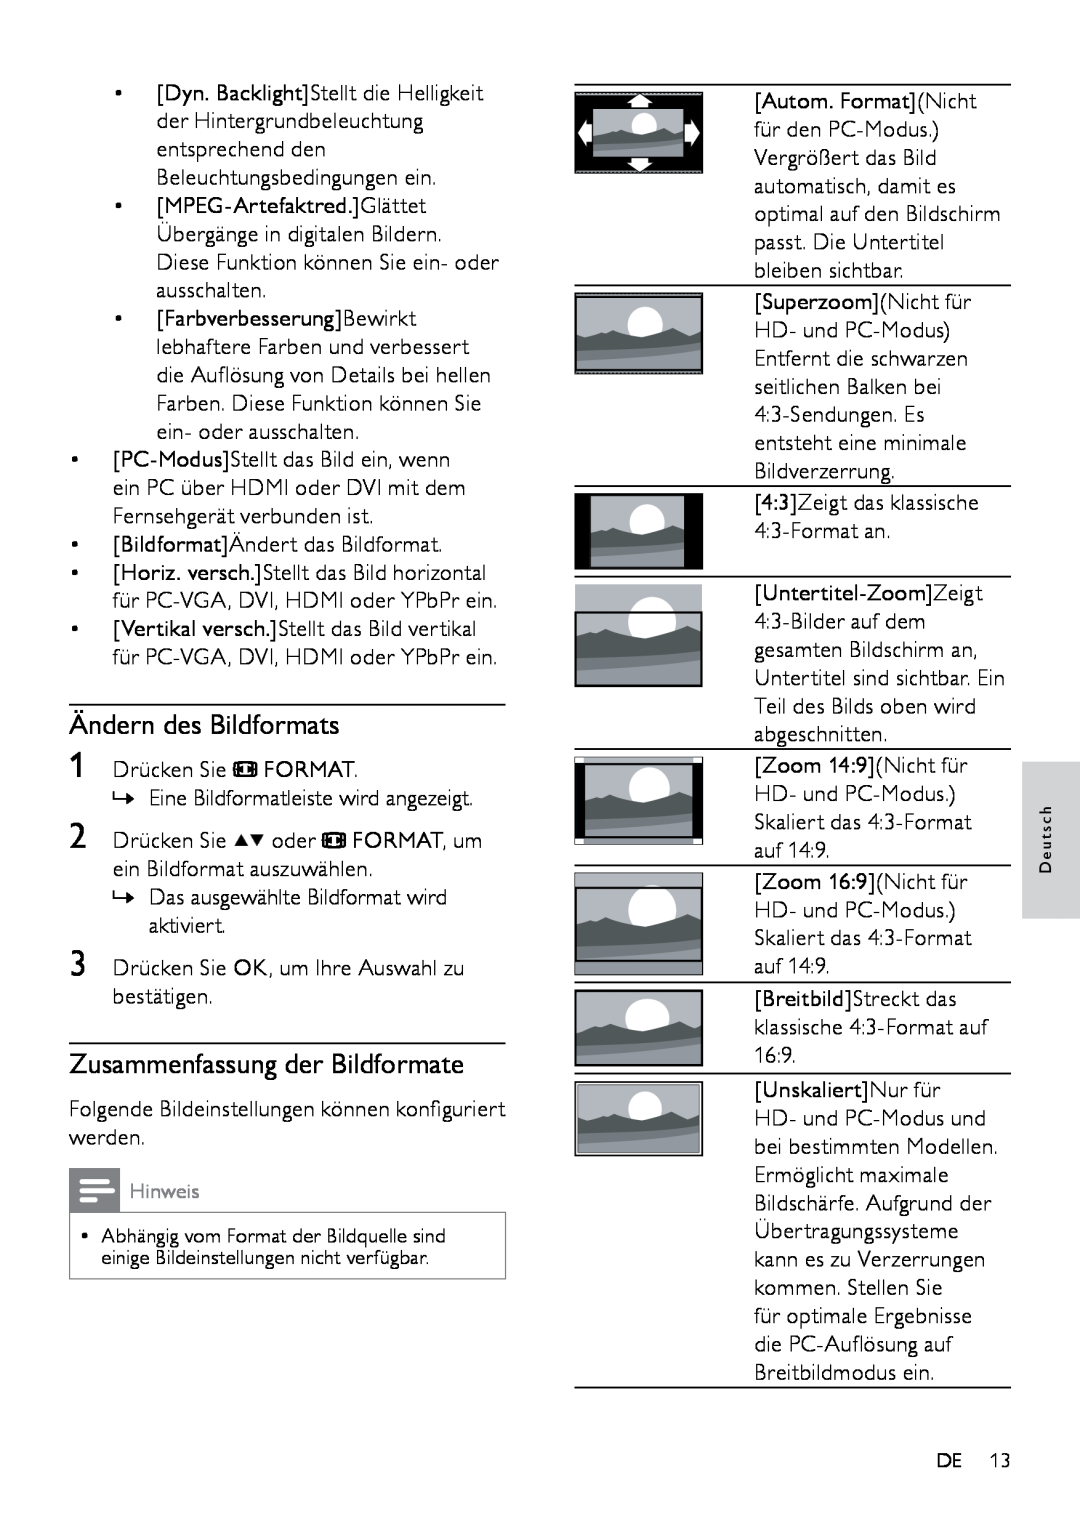 Philips 22PFL3404H/12, 42PFL3604D/12, 26PFL3404D/12 manual Ändern des Bildformats, Zusammenfassung der Bildformate, s c h 